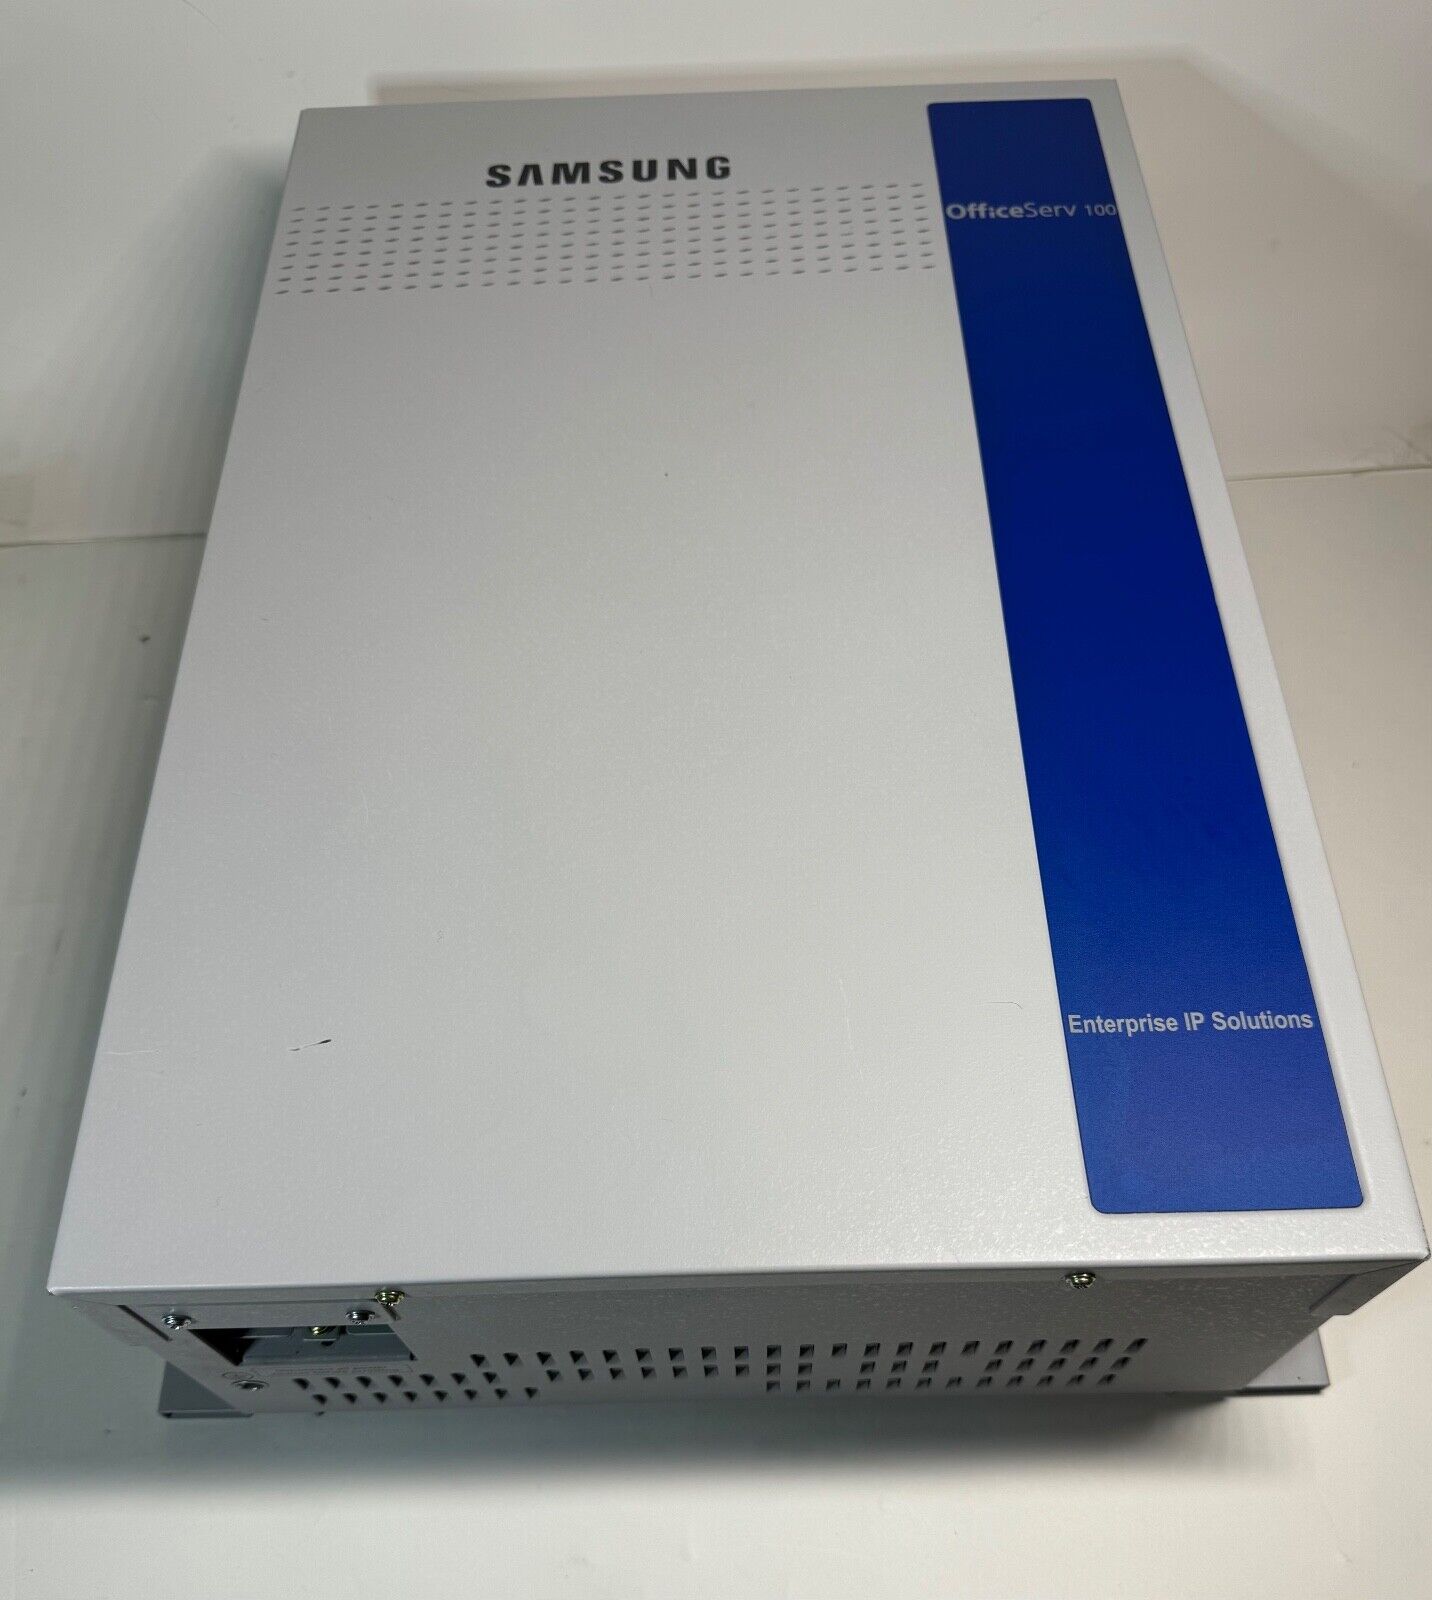 Samsung OfficServ 100 Enterprise IP Solution